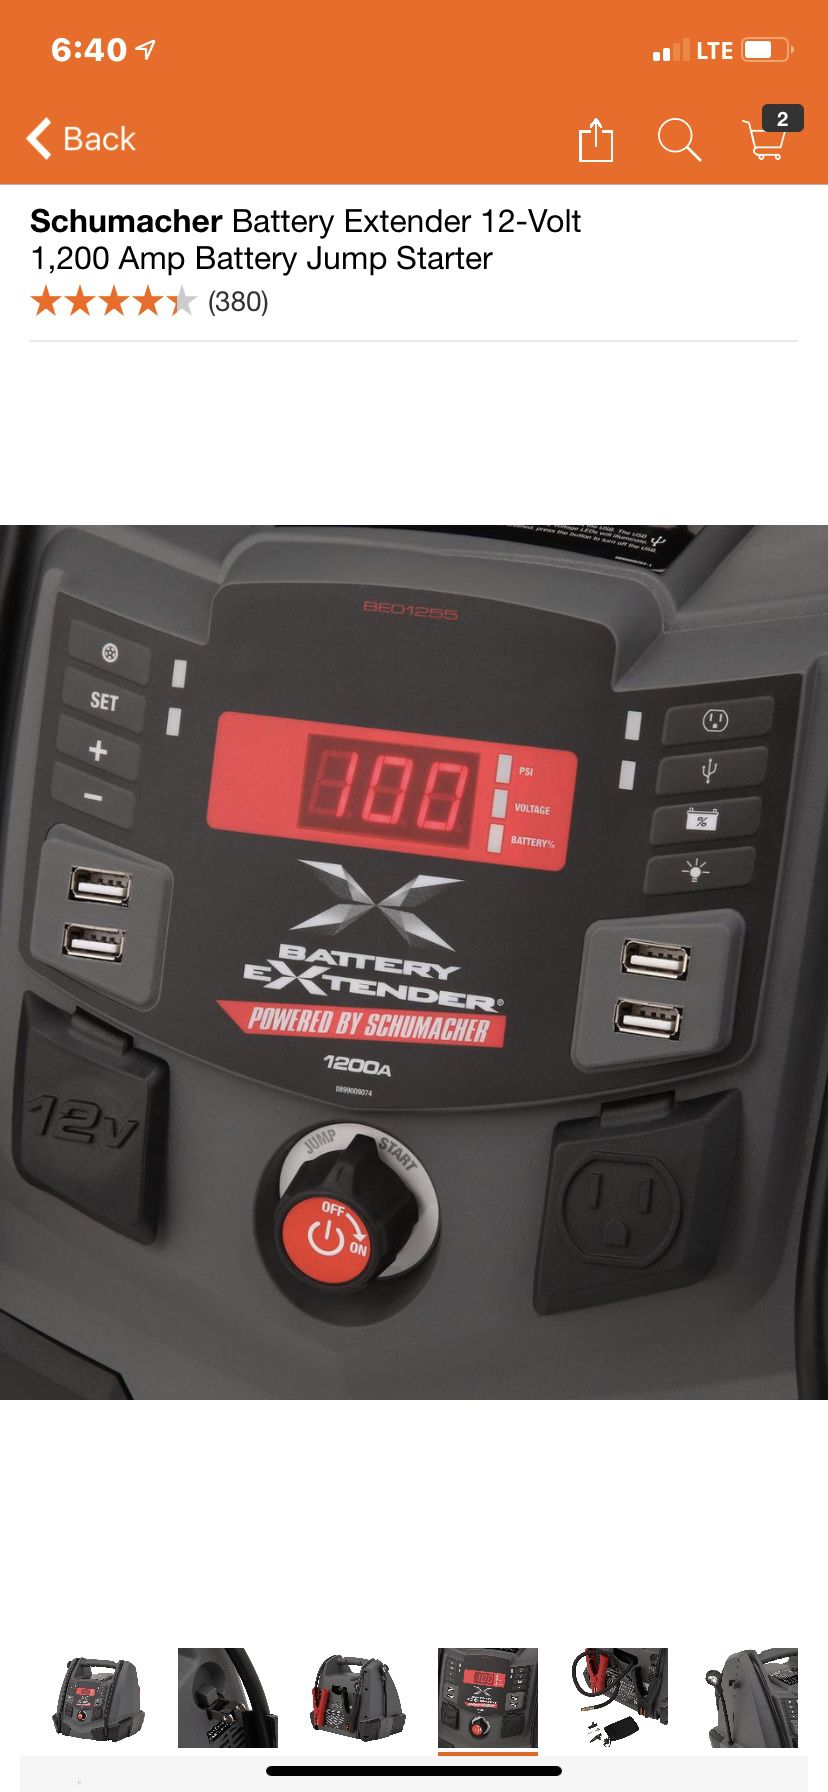 Schumacher Battery Extender 12-Volt 1,200 Amp Battery Jump Starter